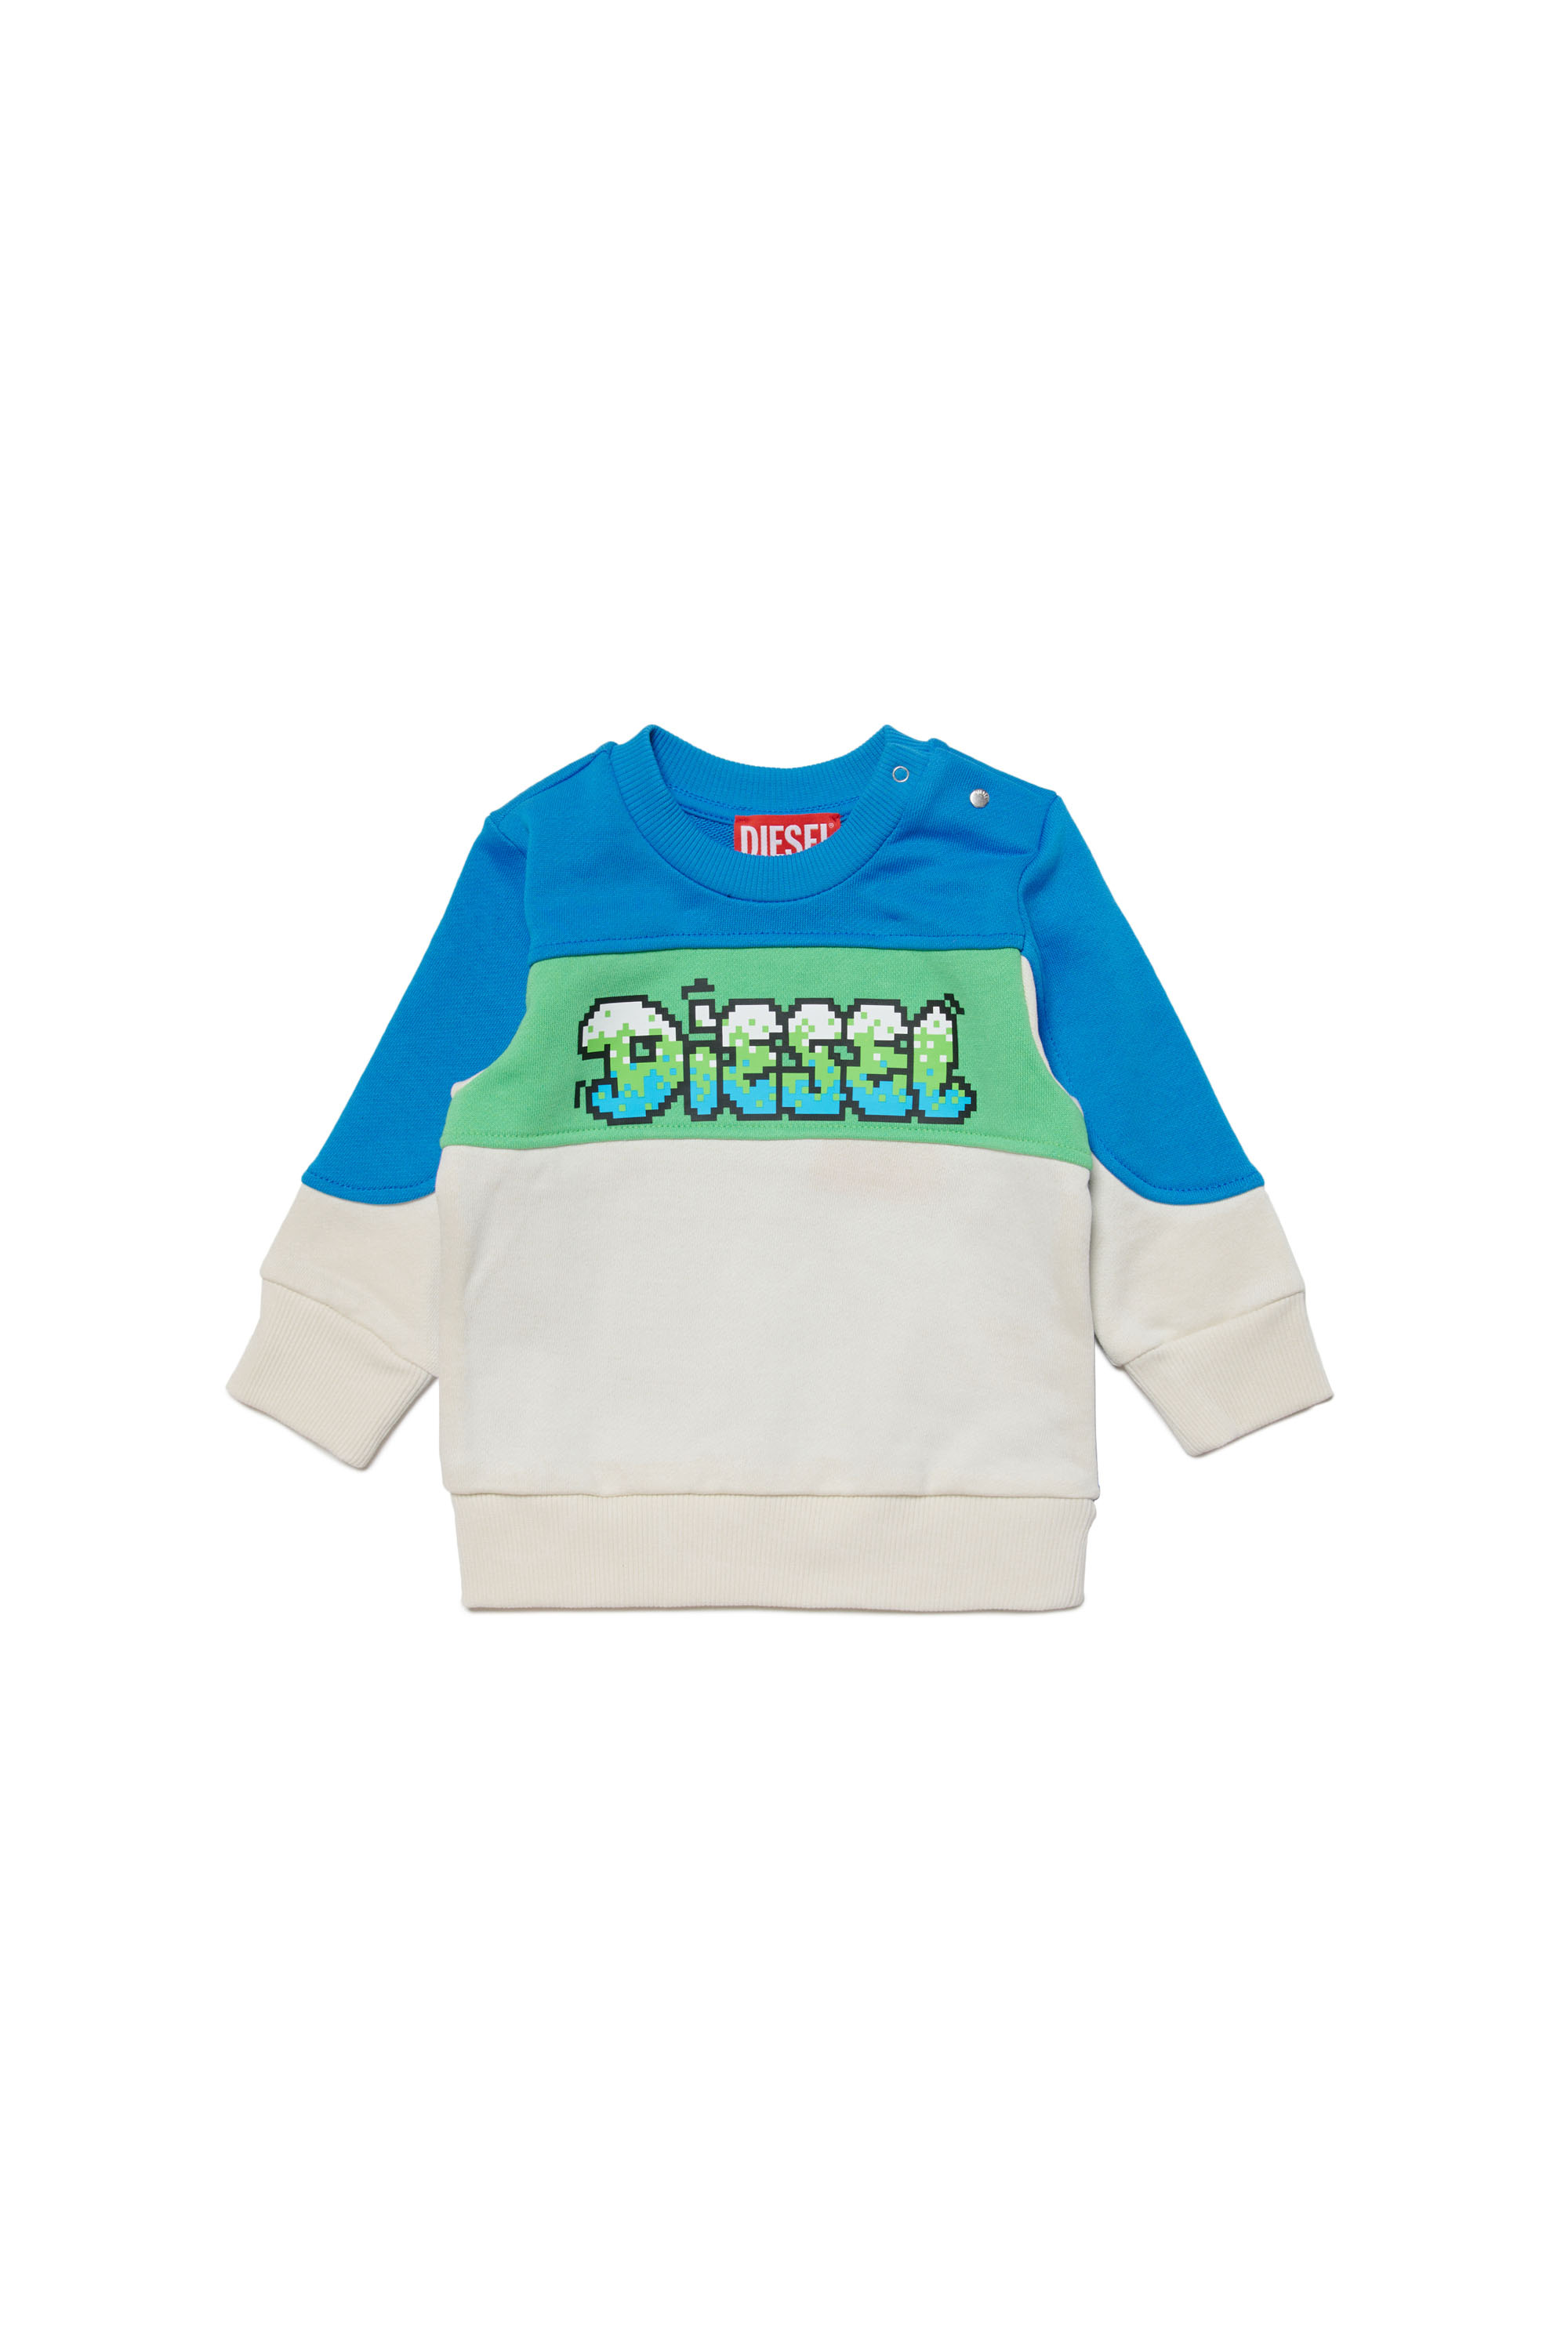 Diesel - SLAB, Homme Sweat-shirt color-block avec logo pixélisé in Polychrome - Image 1